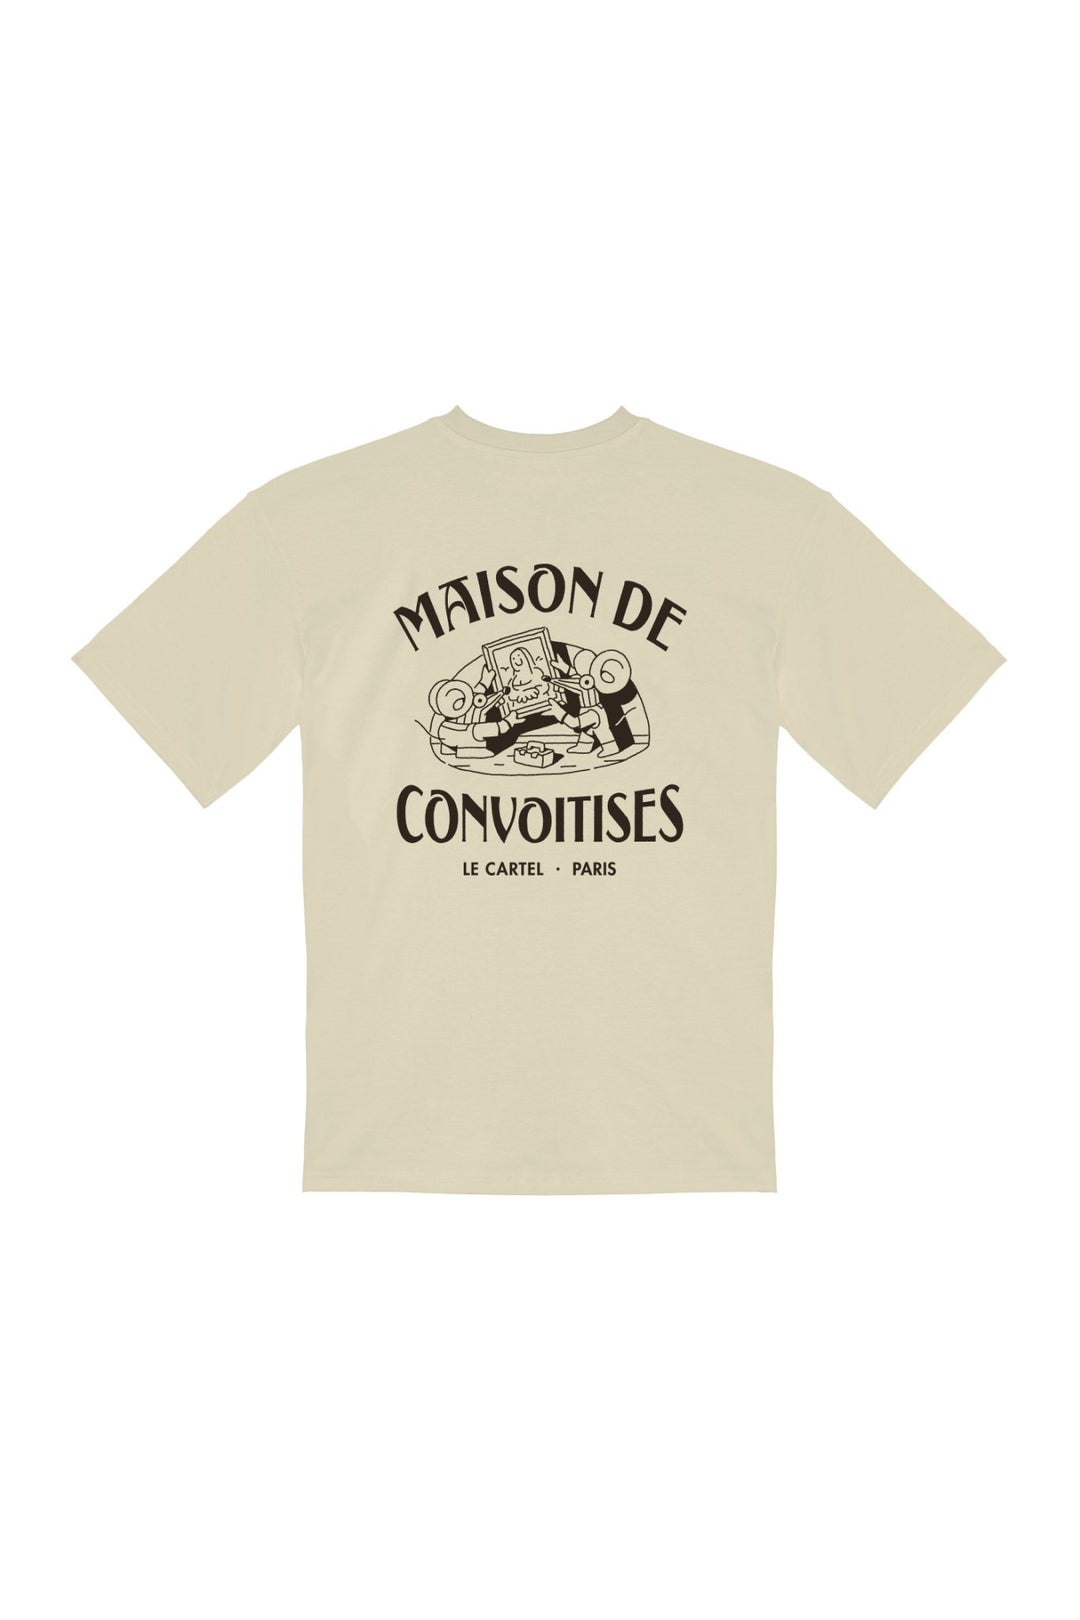 MAISON DE CONVOITISES・T-shirt unisexe・Blanc cassé - Le Cartel